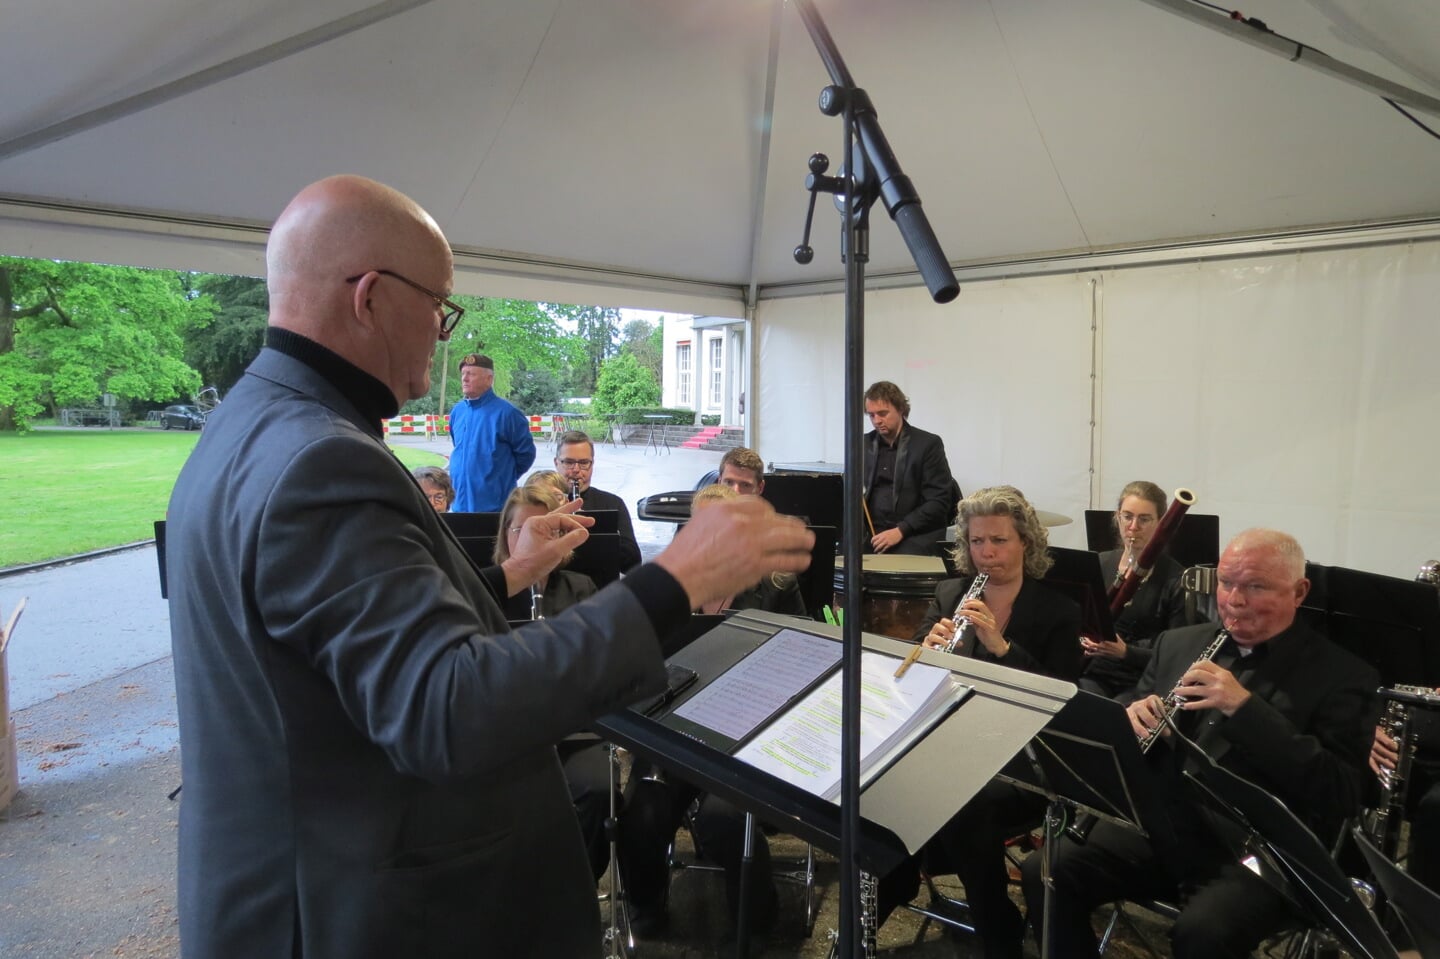 De KBH onder leiding van Peter van Dinther verzorgde de muzikale omlijsting.